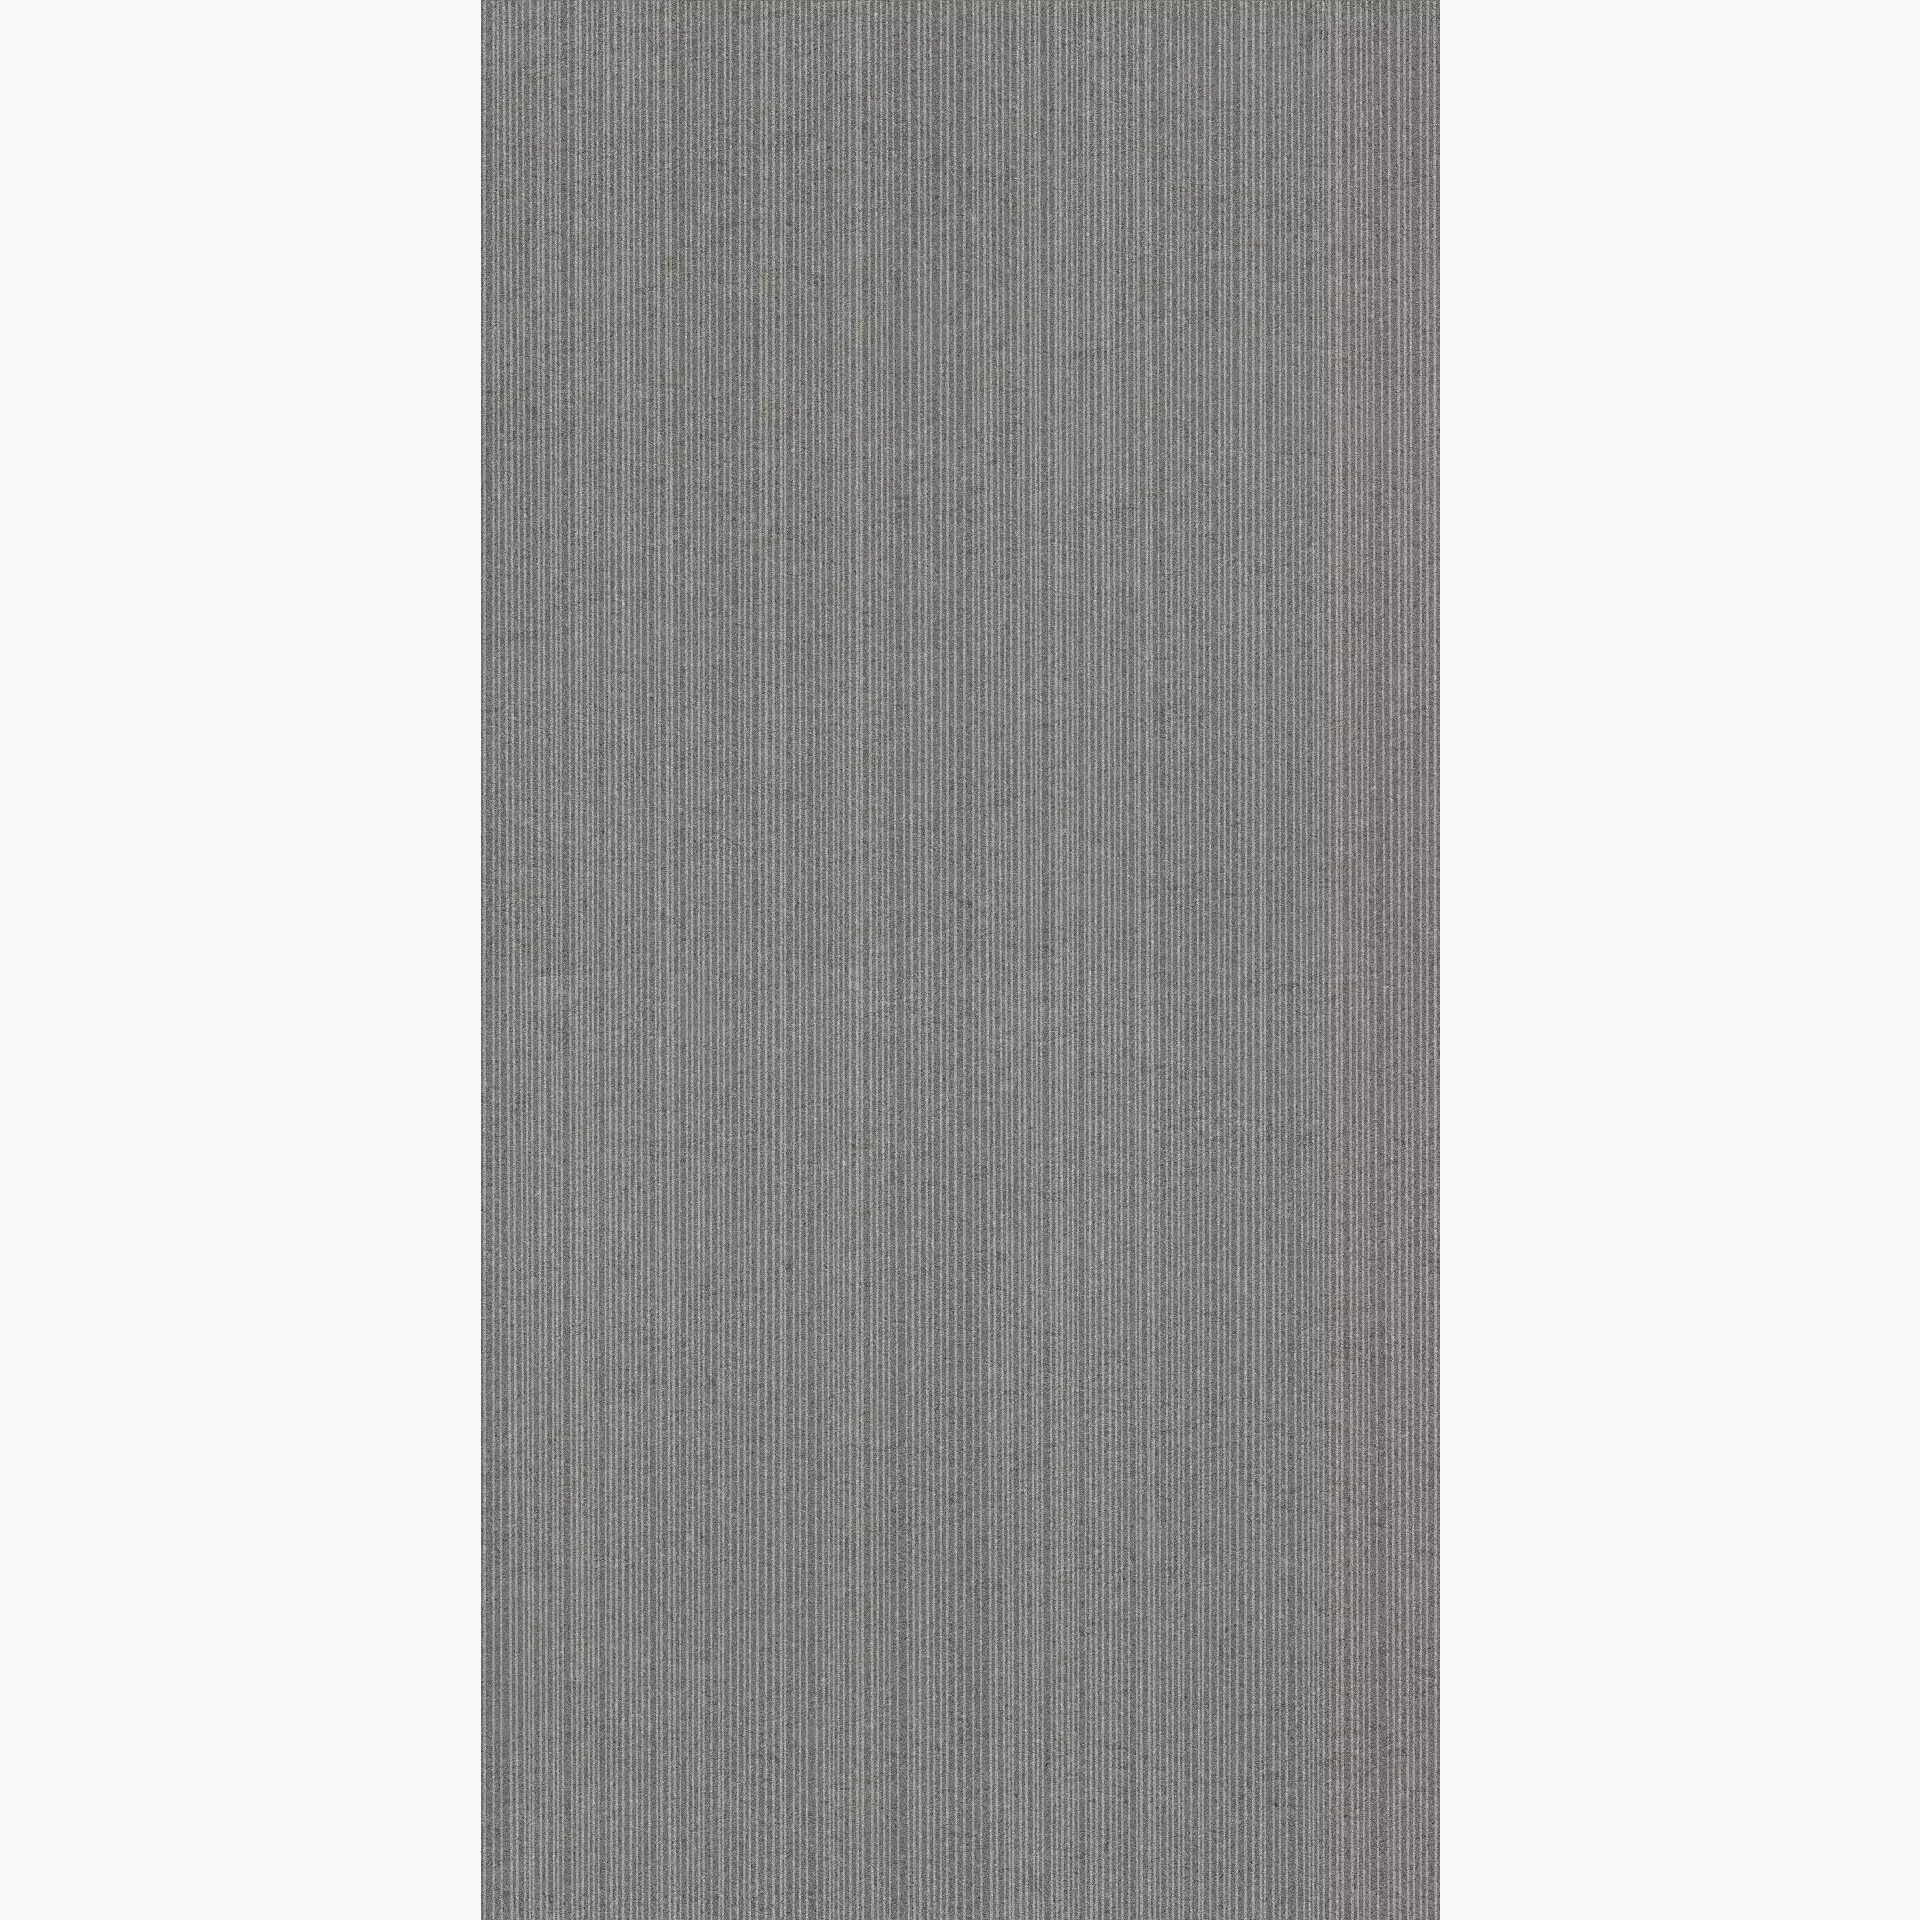 Coem Tweed Stone Graphite Naturale Graphite TWS360R natur struktur 30x60cm Straight rektifiziert 9mm